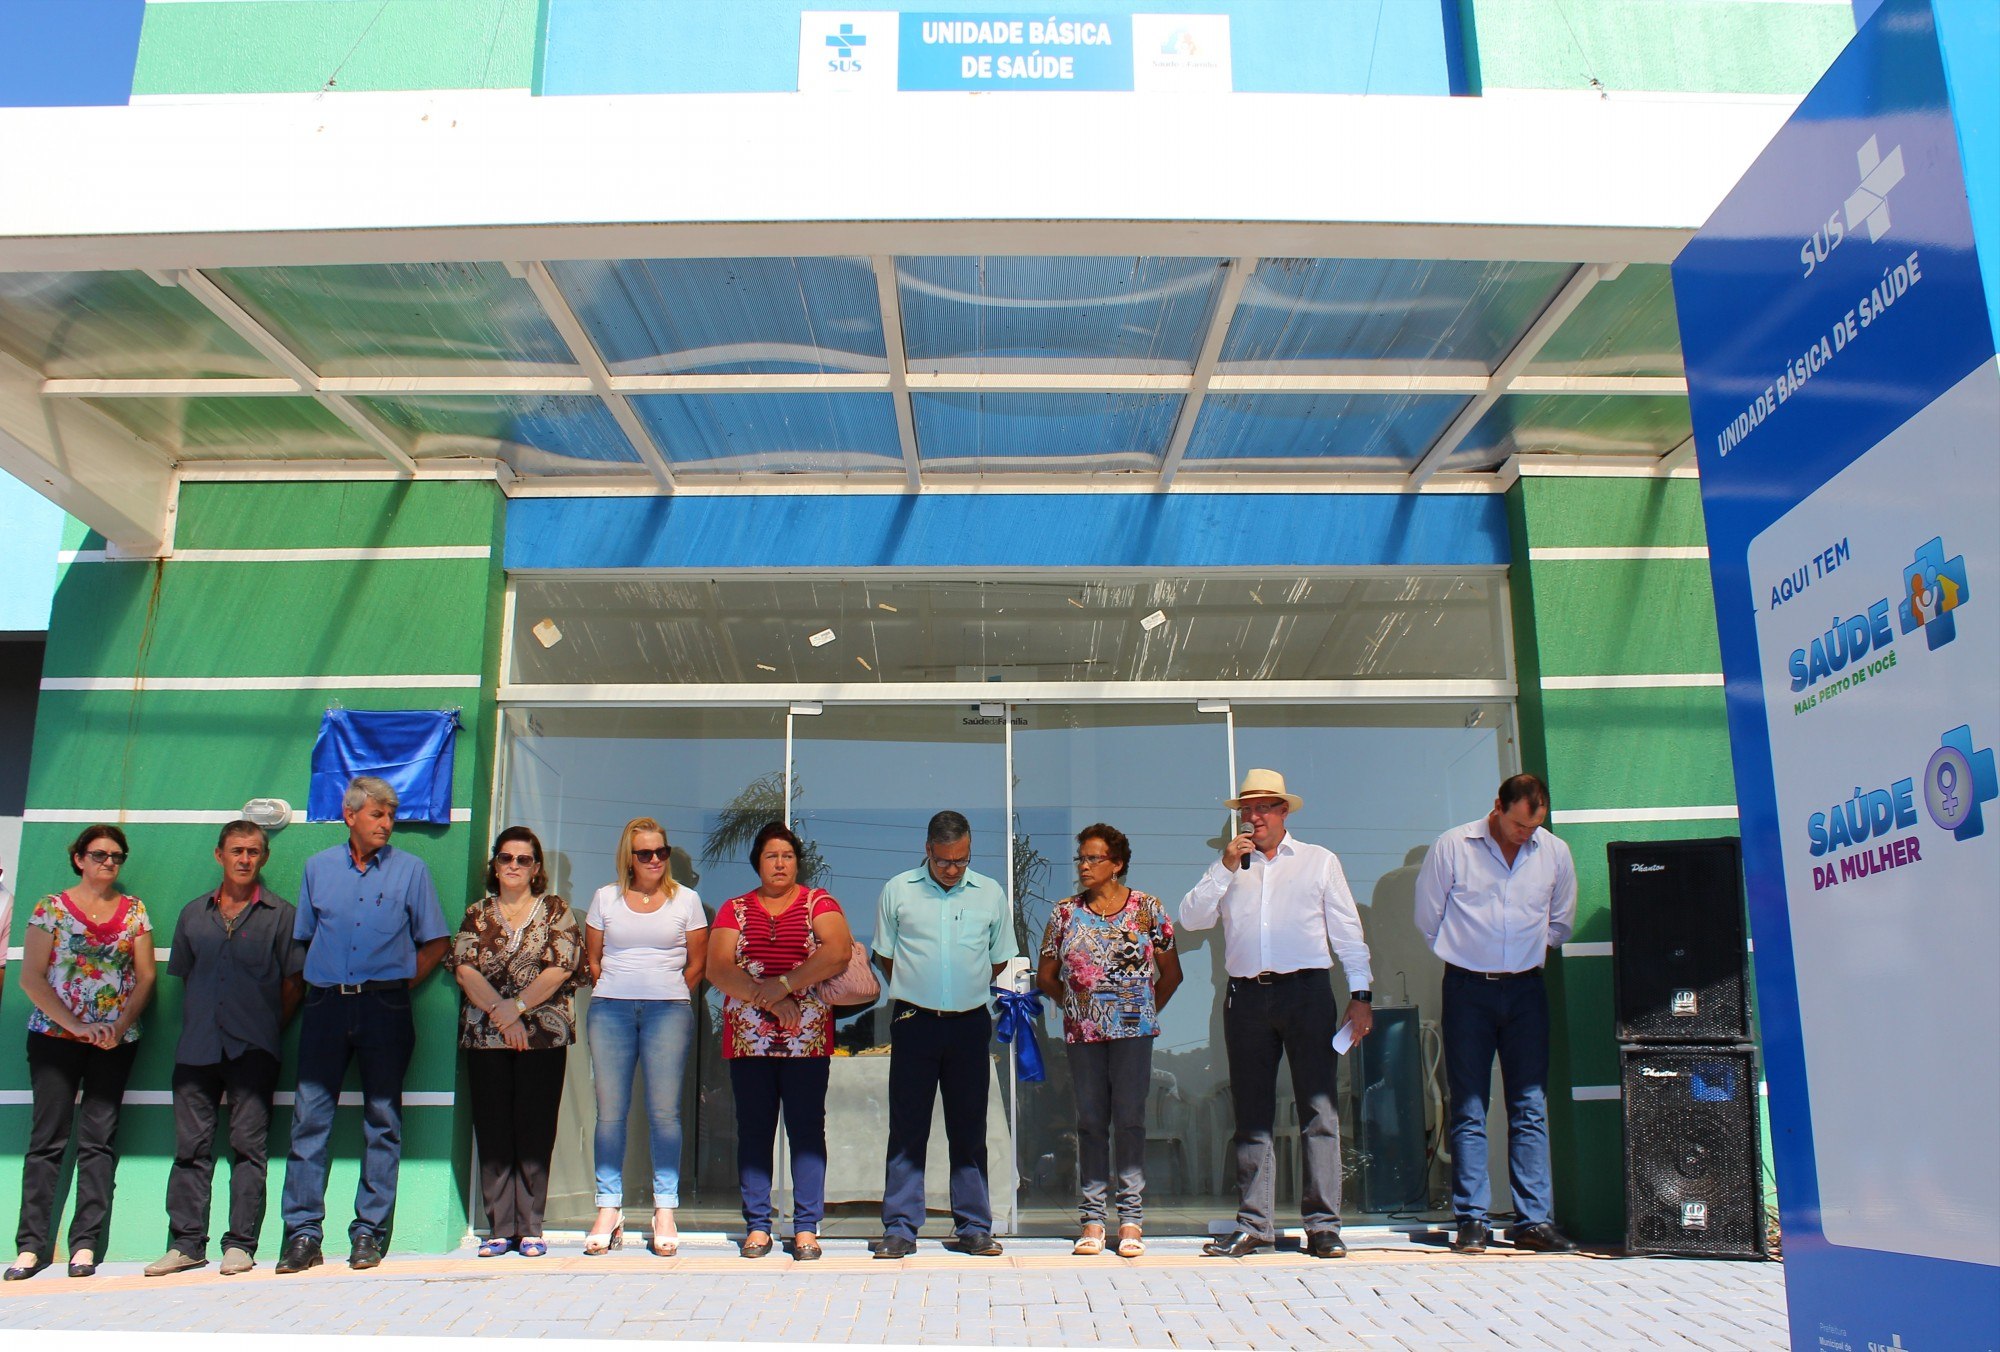 You are currently viewing Unidade Básica de Saúde de R$ 400 mil é inaugurada no interior de Passos Maia